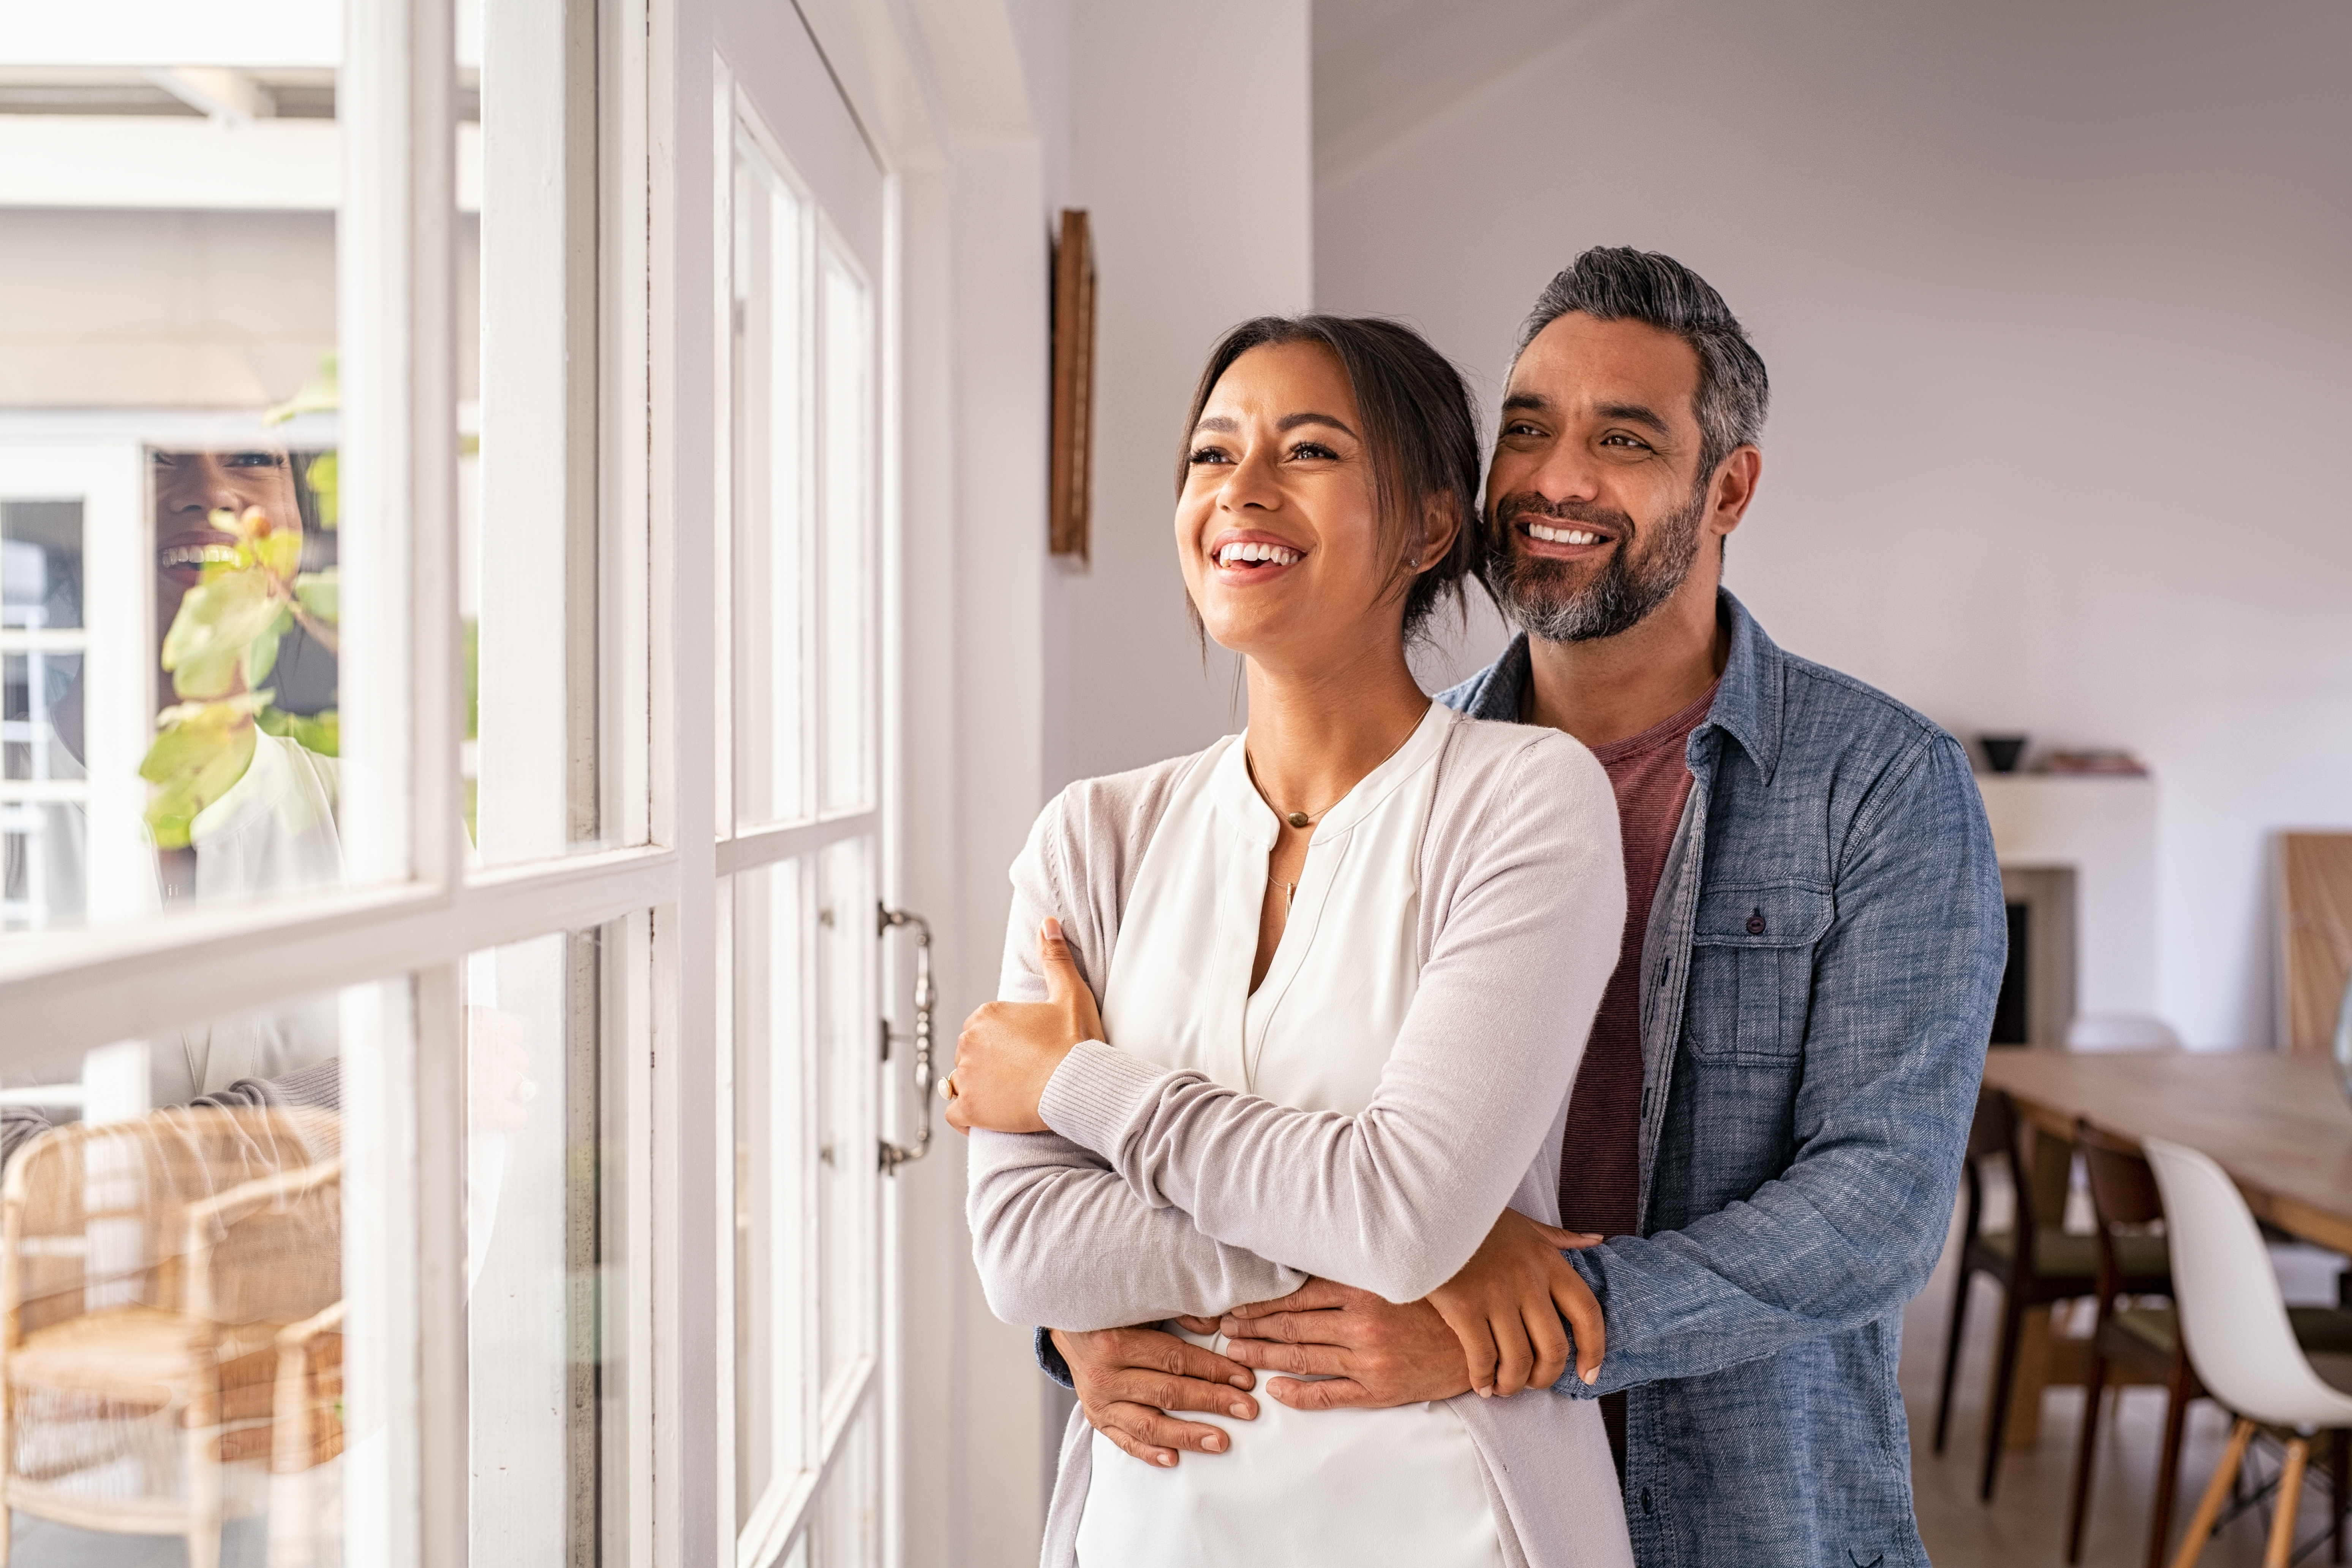 Un mari et sa femme sourient en regardant par la fenêtre | Source : Shutterstock